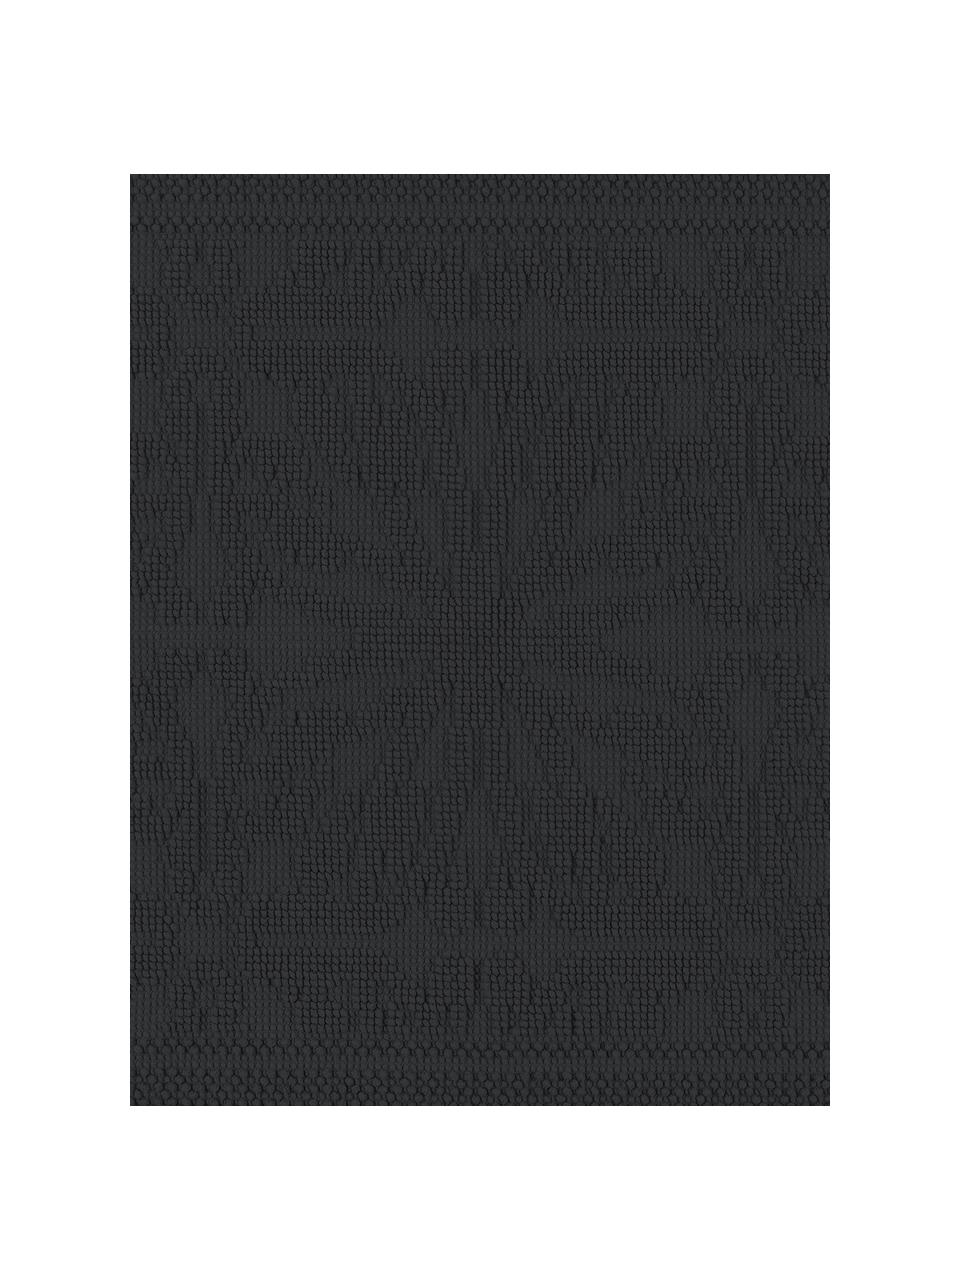 Baumwoll-Badvorleger Hammam mit Hoch-Tief-Muster, 100% Baumwolle, schwere Qualität, 1700 g/m², Schwarz, B 60 x L 80 cm